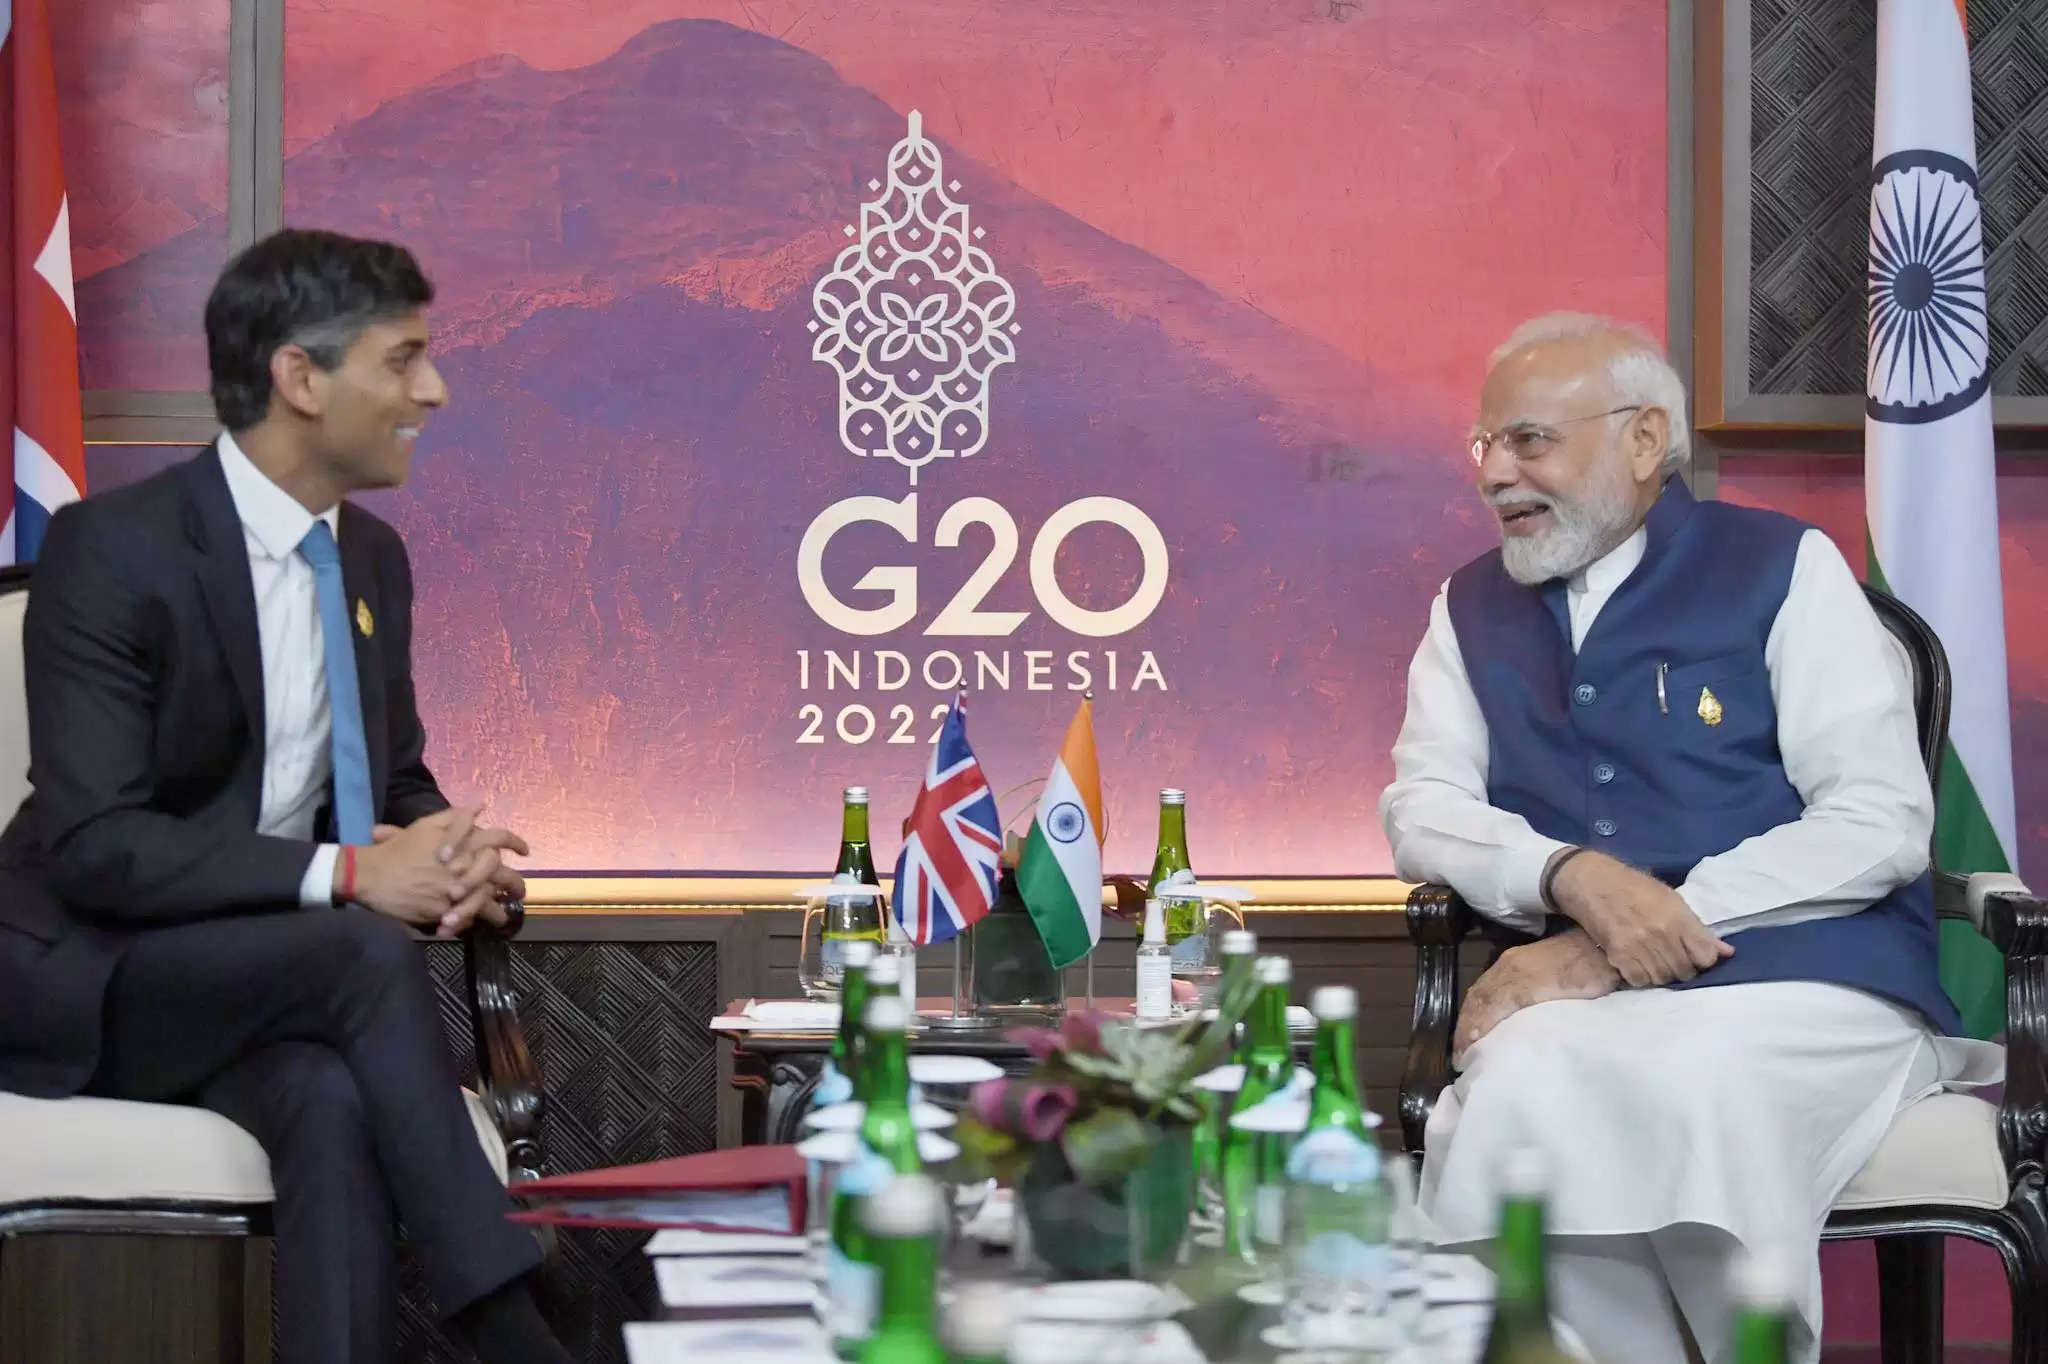 जी-20 शिखर सम्मेलन (G-20 Summit) के लिए बाली पहुंचे प्रधानमंत्री नरेंद्र मोदी ने बुधवार को ब्रिटेन के नवनिर्वाचित प्रधानमंत्री ऋषि सुनक के साथ बैठक की। प्रधानमंत्री मोदी ने बाली में जी-20 शिखर सम्मेलन से इतर यह बैठक की। यह दोनों राजनेताओं के बीच पहली बैठक थी। प्रधानमंत्री नरेंद्र मोदी ने ब्रिटेन का प्रधानमंत्री बनने पर ऋषि सुनक को बधाई दी। Prime Minister's meeting with the Prime Minister of the United Kingdom on the sidelines of G-20 Summit in Bali